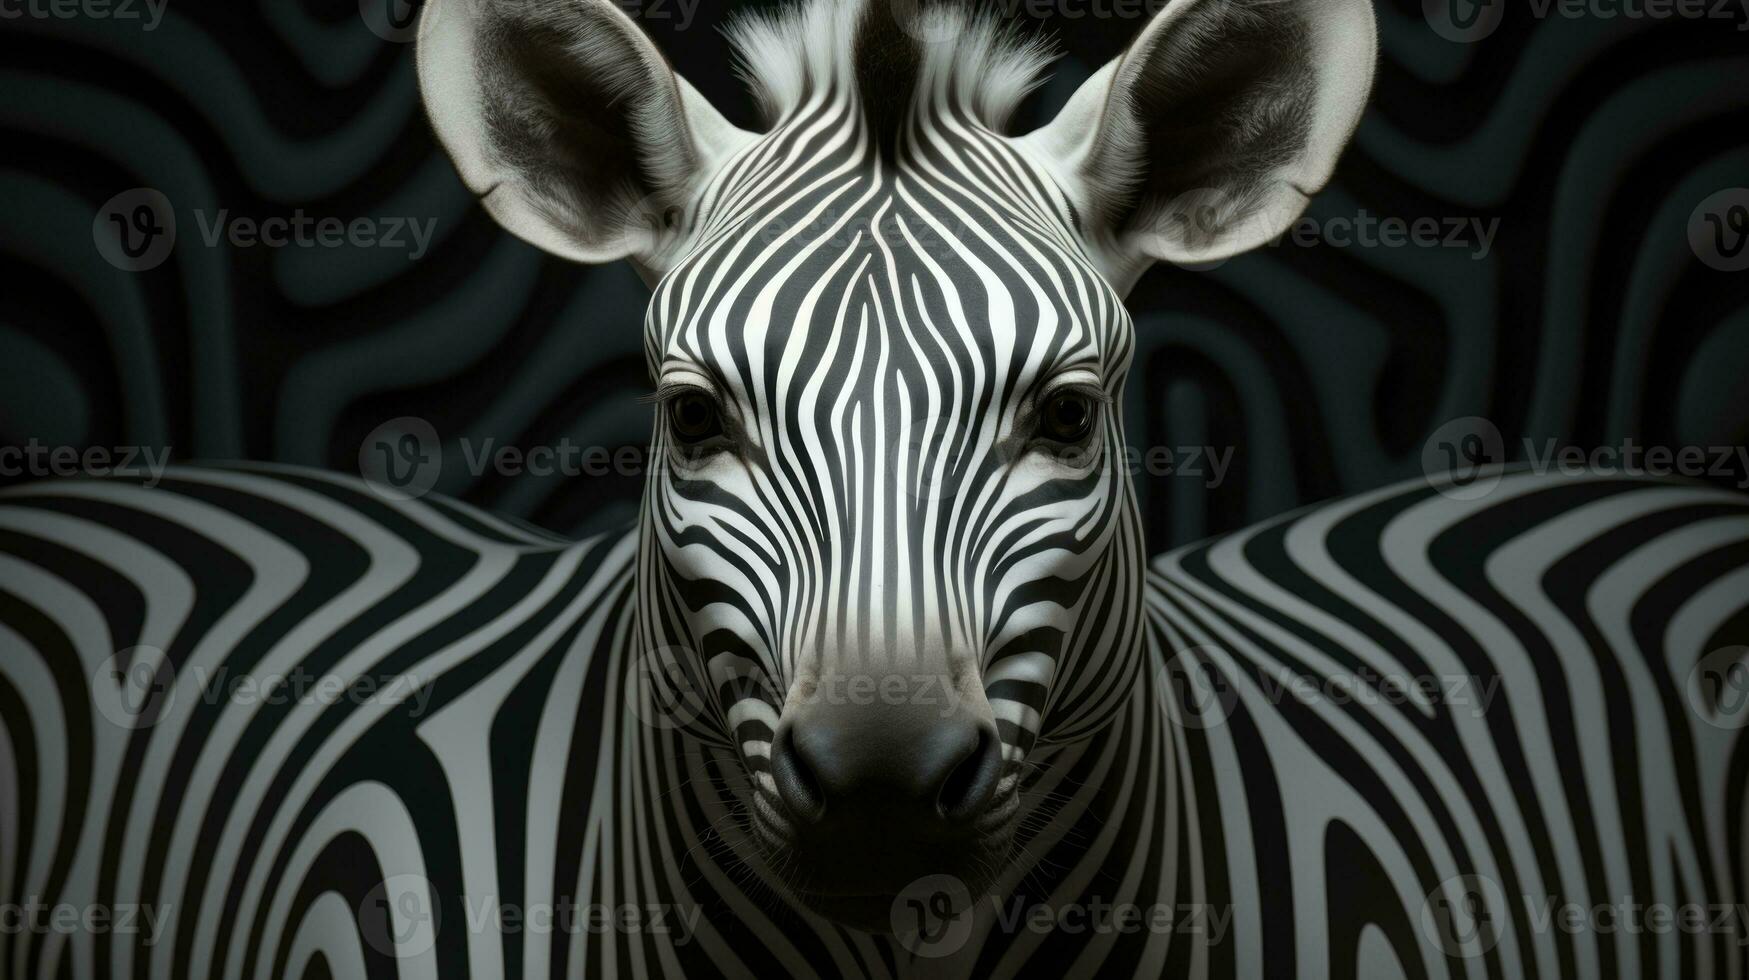 abstrakt reflexion av en zebra från två sidor. foto